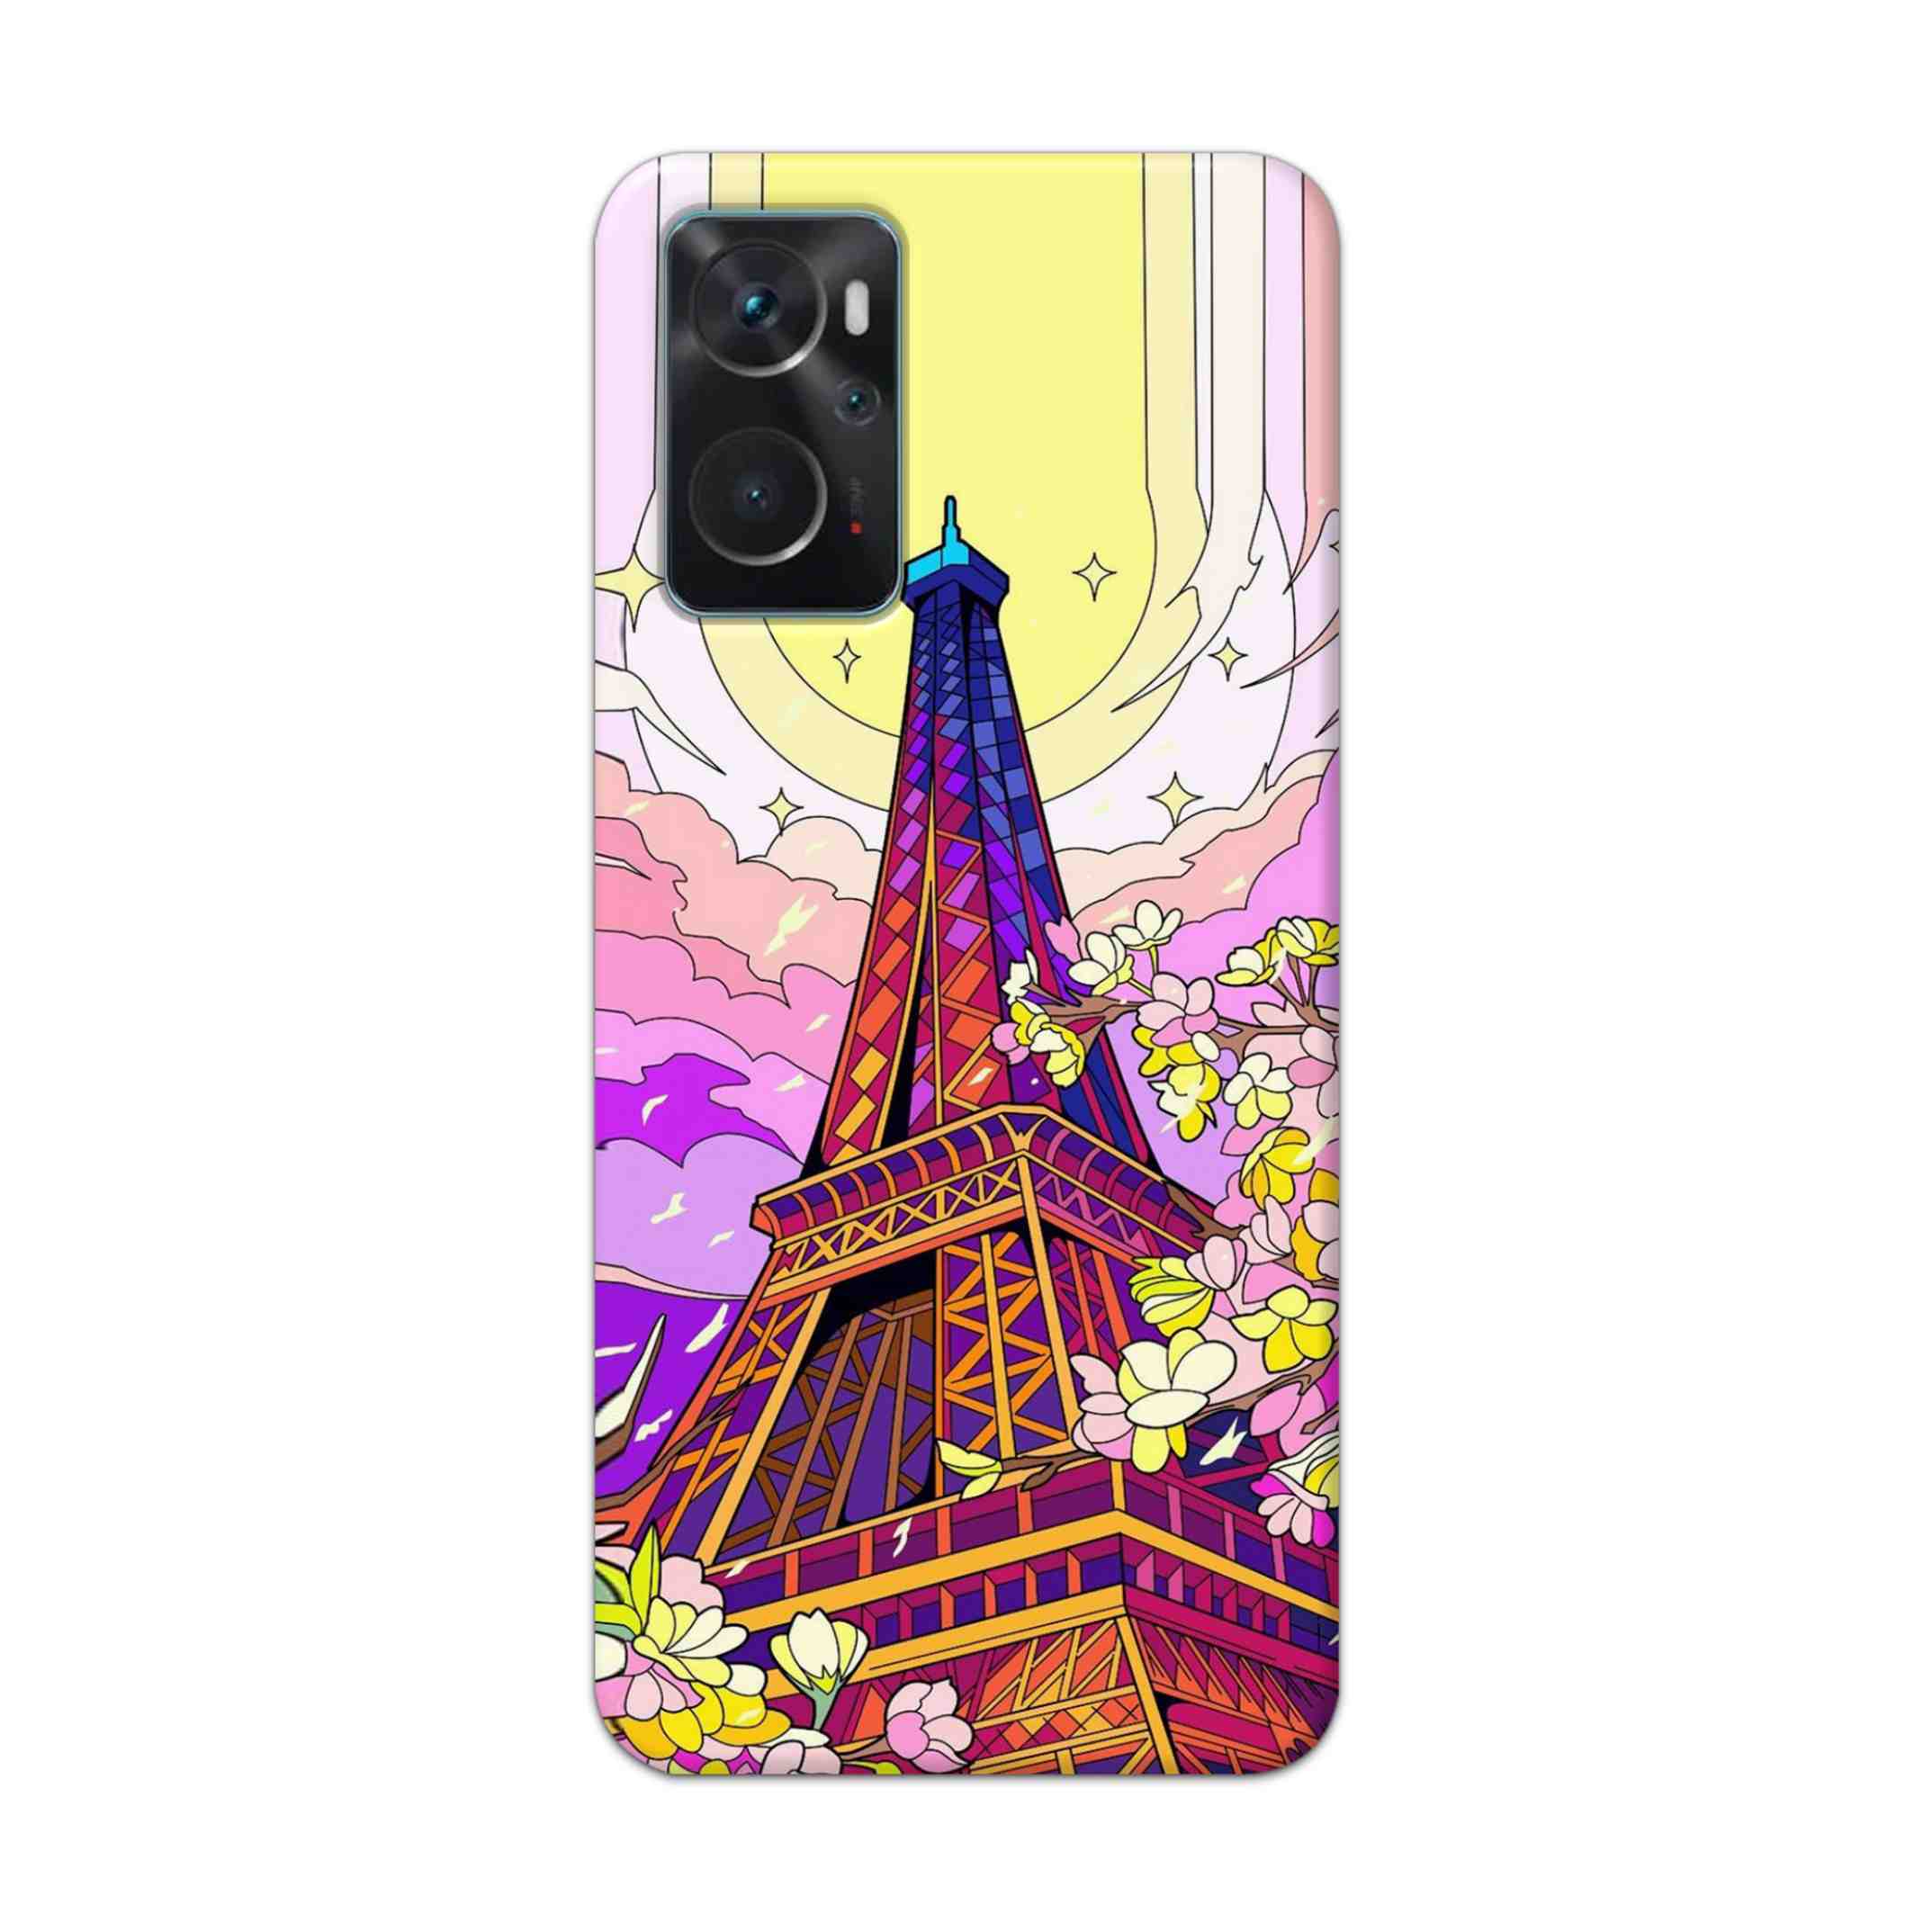 Buy Eiffel Tower Hard Back Mobile Phone Case Cover For Oppo K10 Online